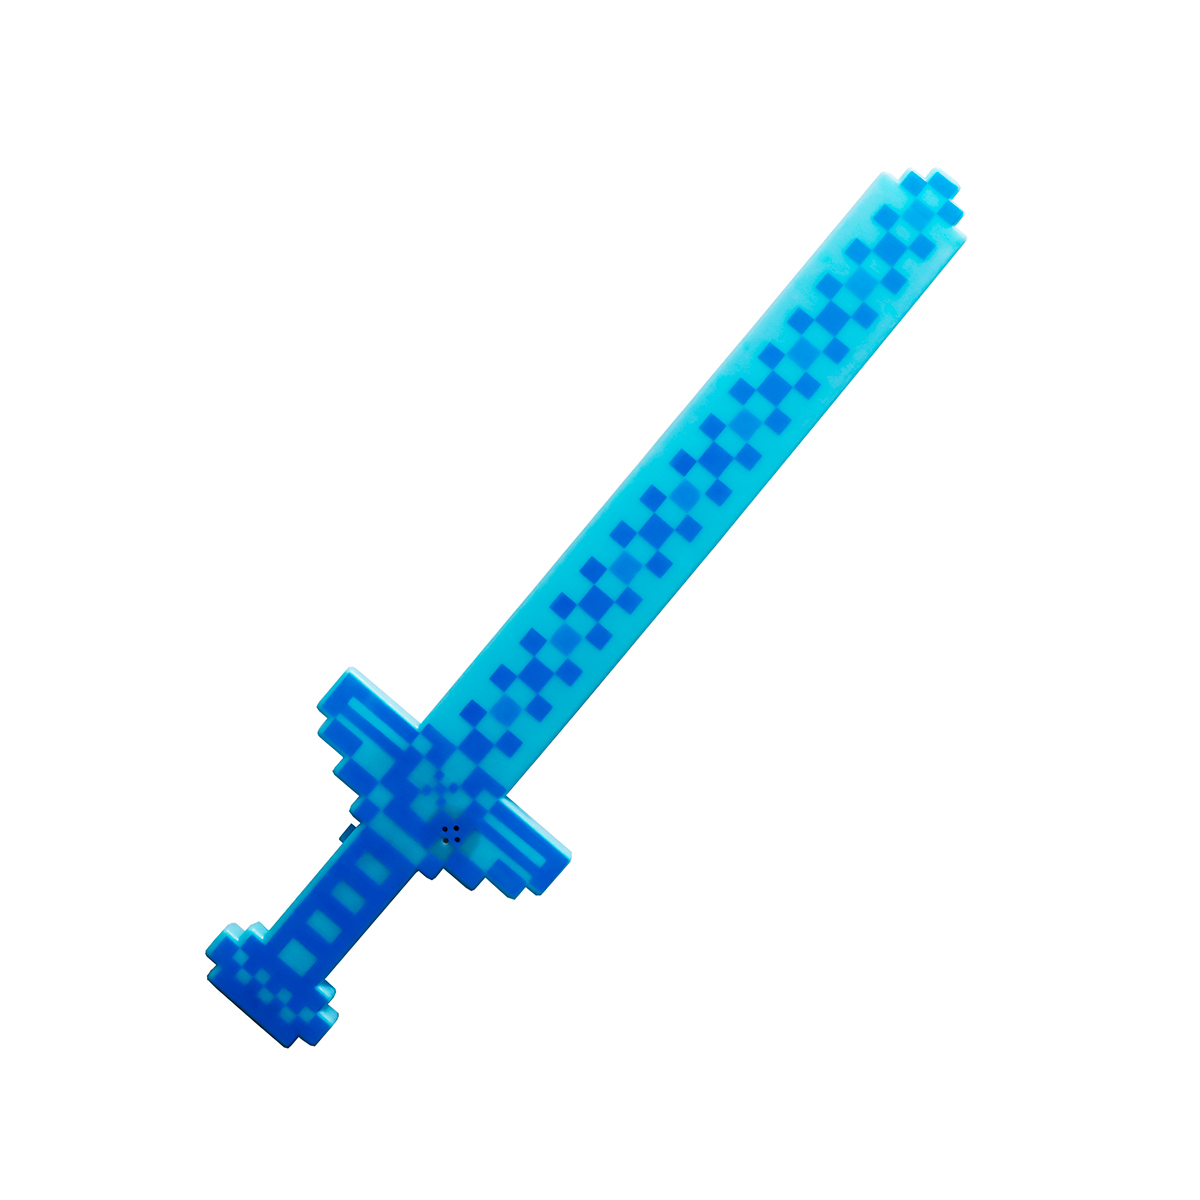 Juguete Espada Minecraft Niños Led Sonido Dizfras + Baterias Azul